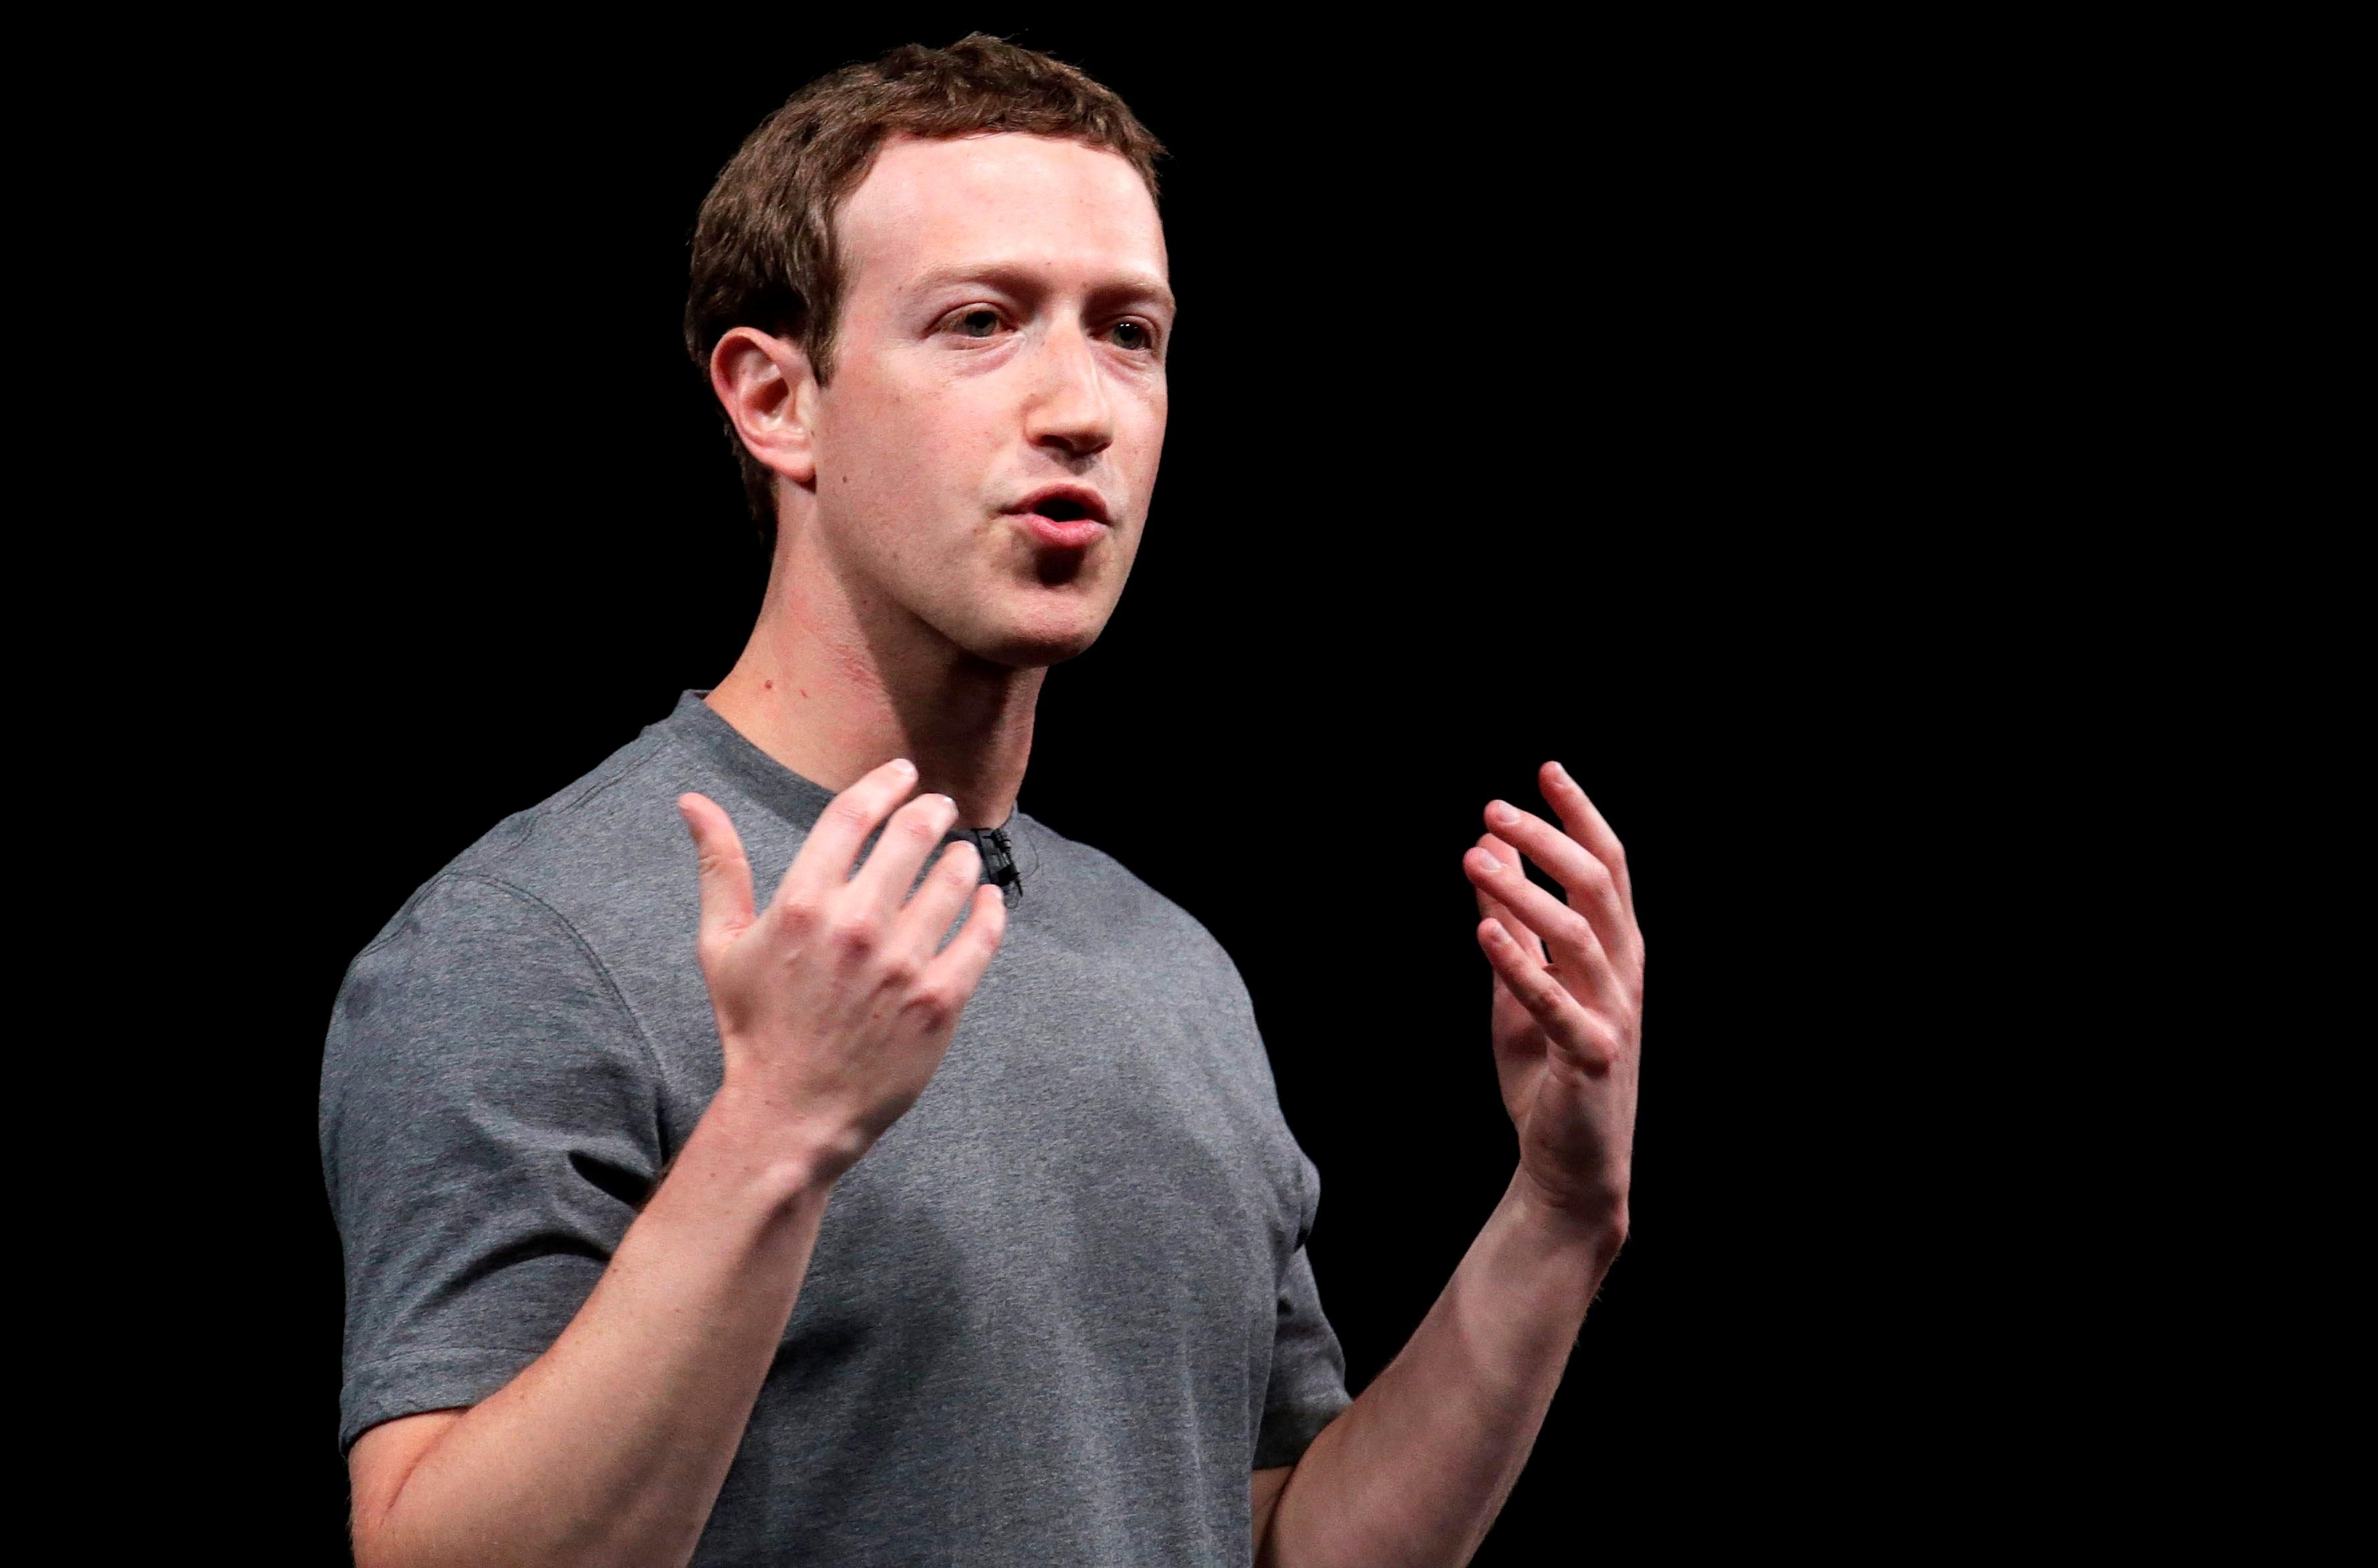 Parlamento Europeo invita a Mark Zuckerberg a explicar desvío de datos